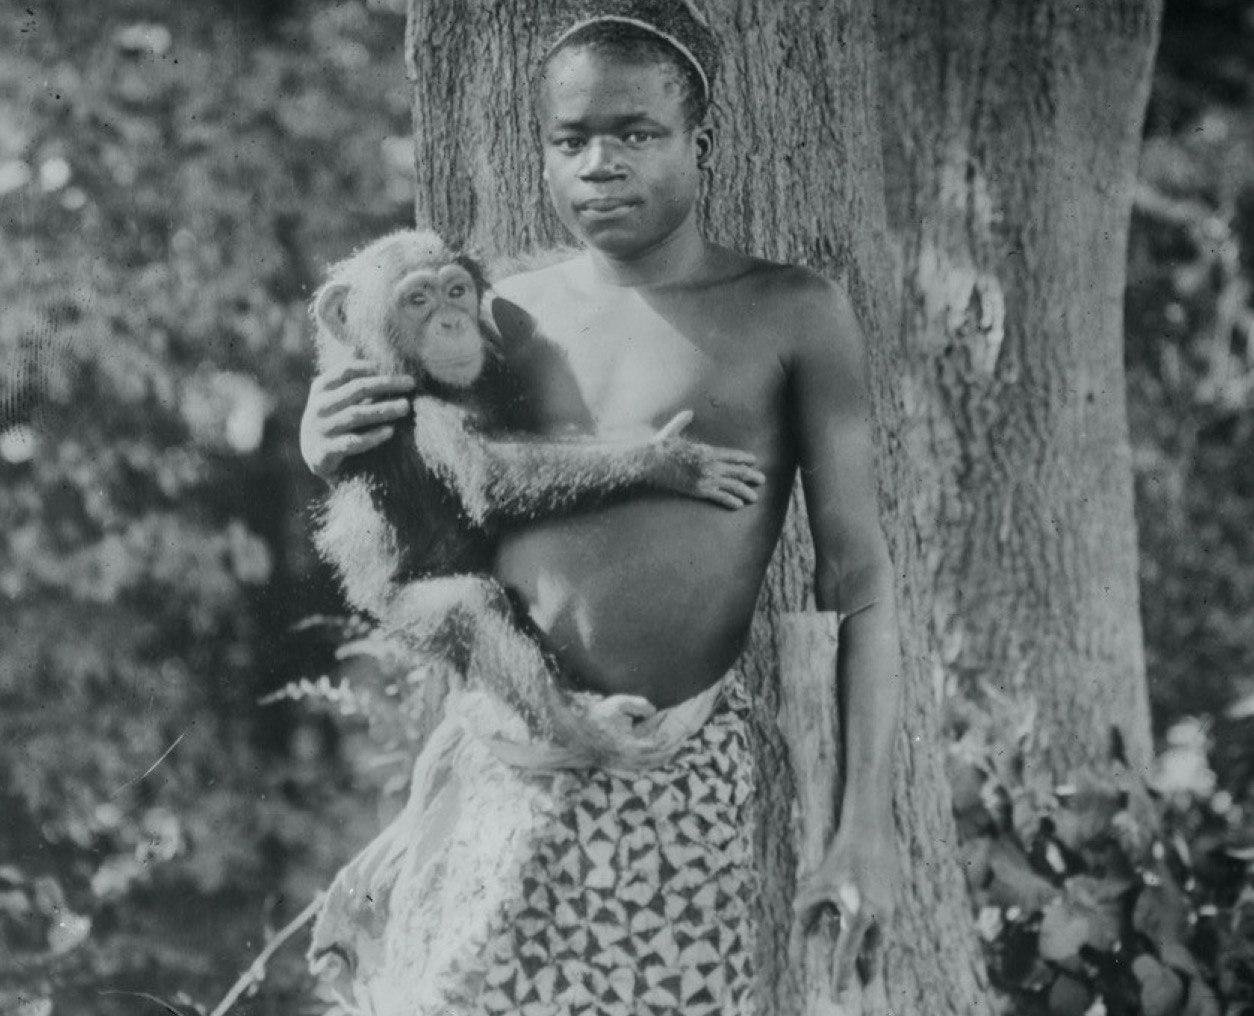 ронксский зоопарк в Нью-Йорке в течение недели держал мужчину из Центральной Африки в вольере.jpg